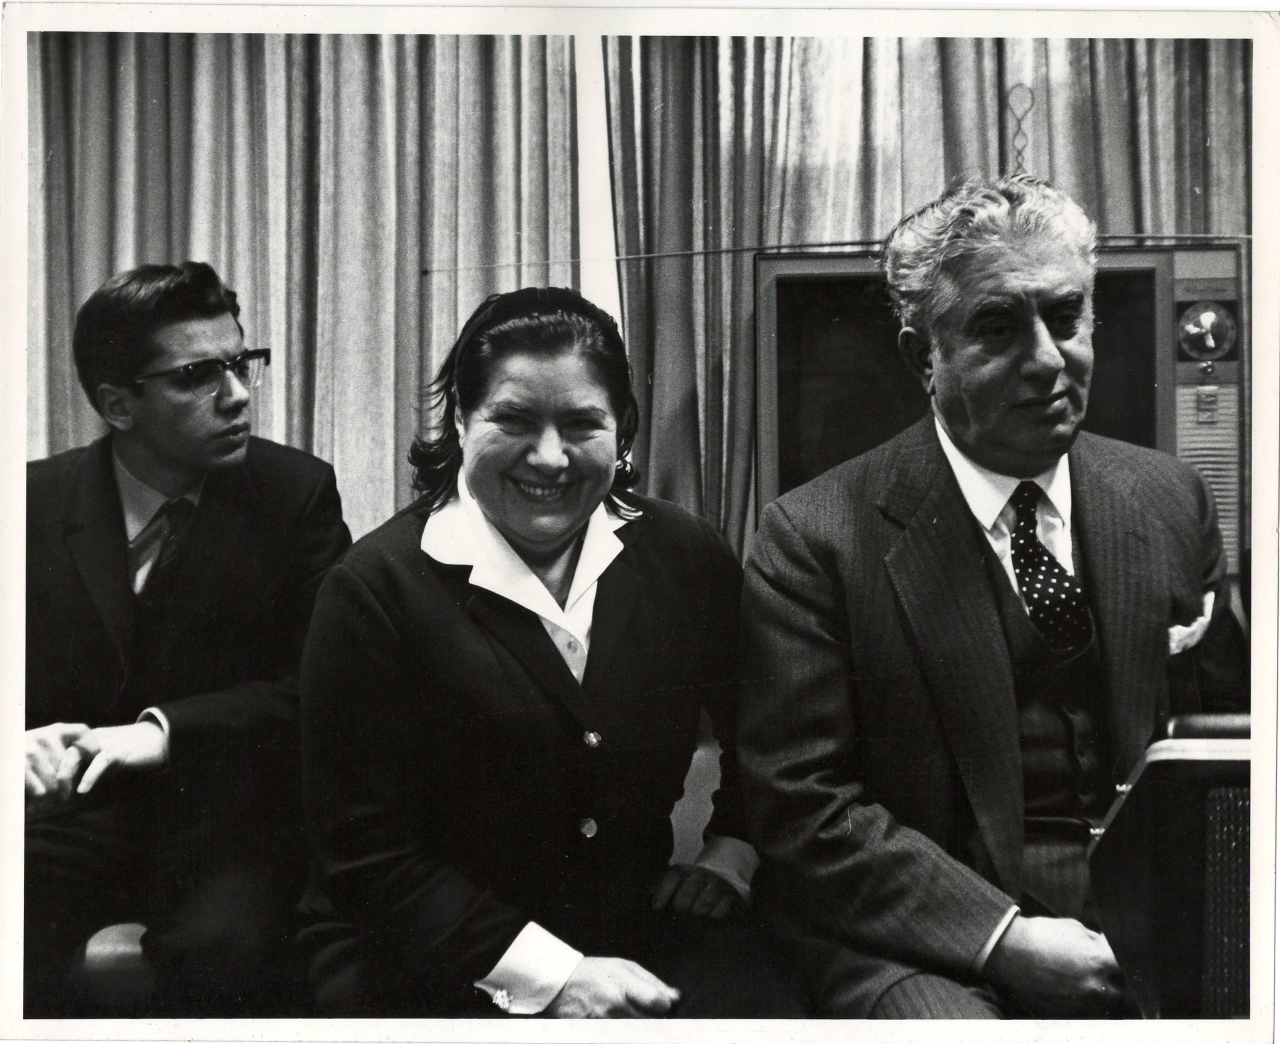 Լուսանկար. Ա. Խաչատրյանը կնոջ՝ Ն. Մակարովայի և որդու՝ Կարենի հետ ՄԱԿ-ում մամլո ասուլիսի ժամանակ 